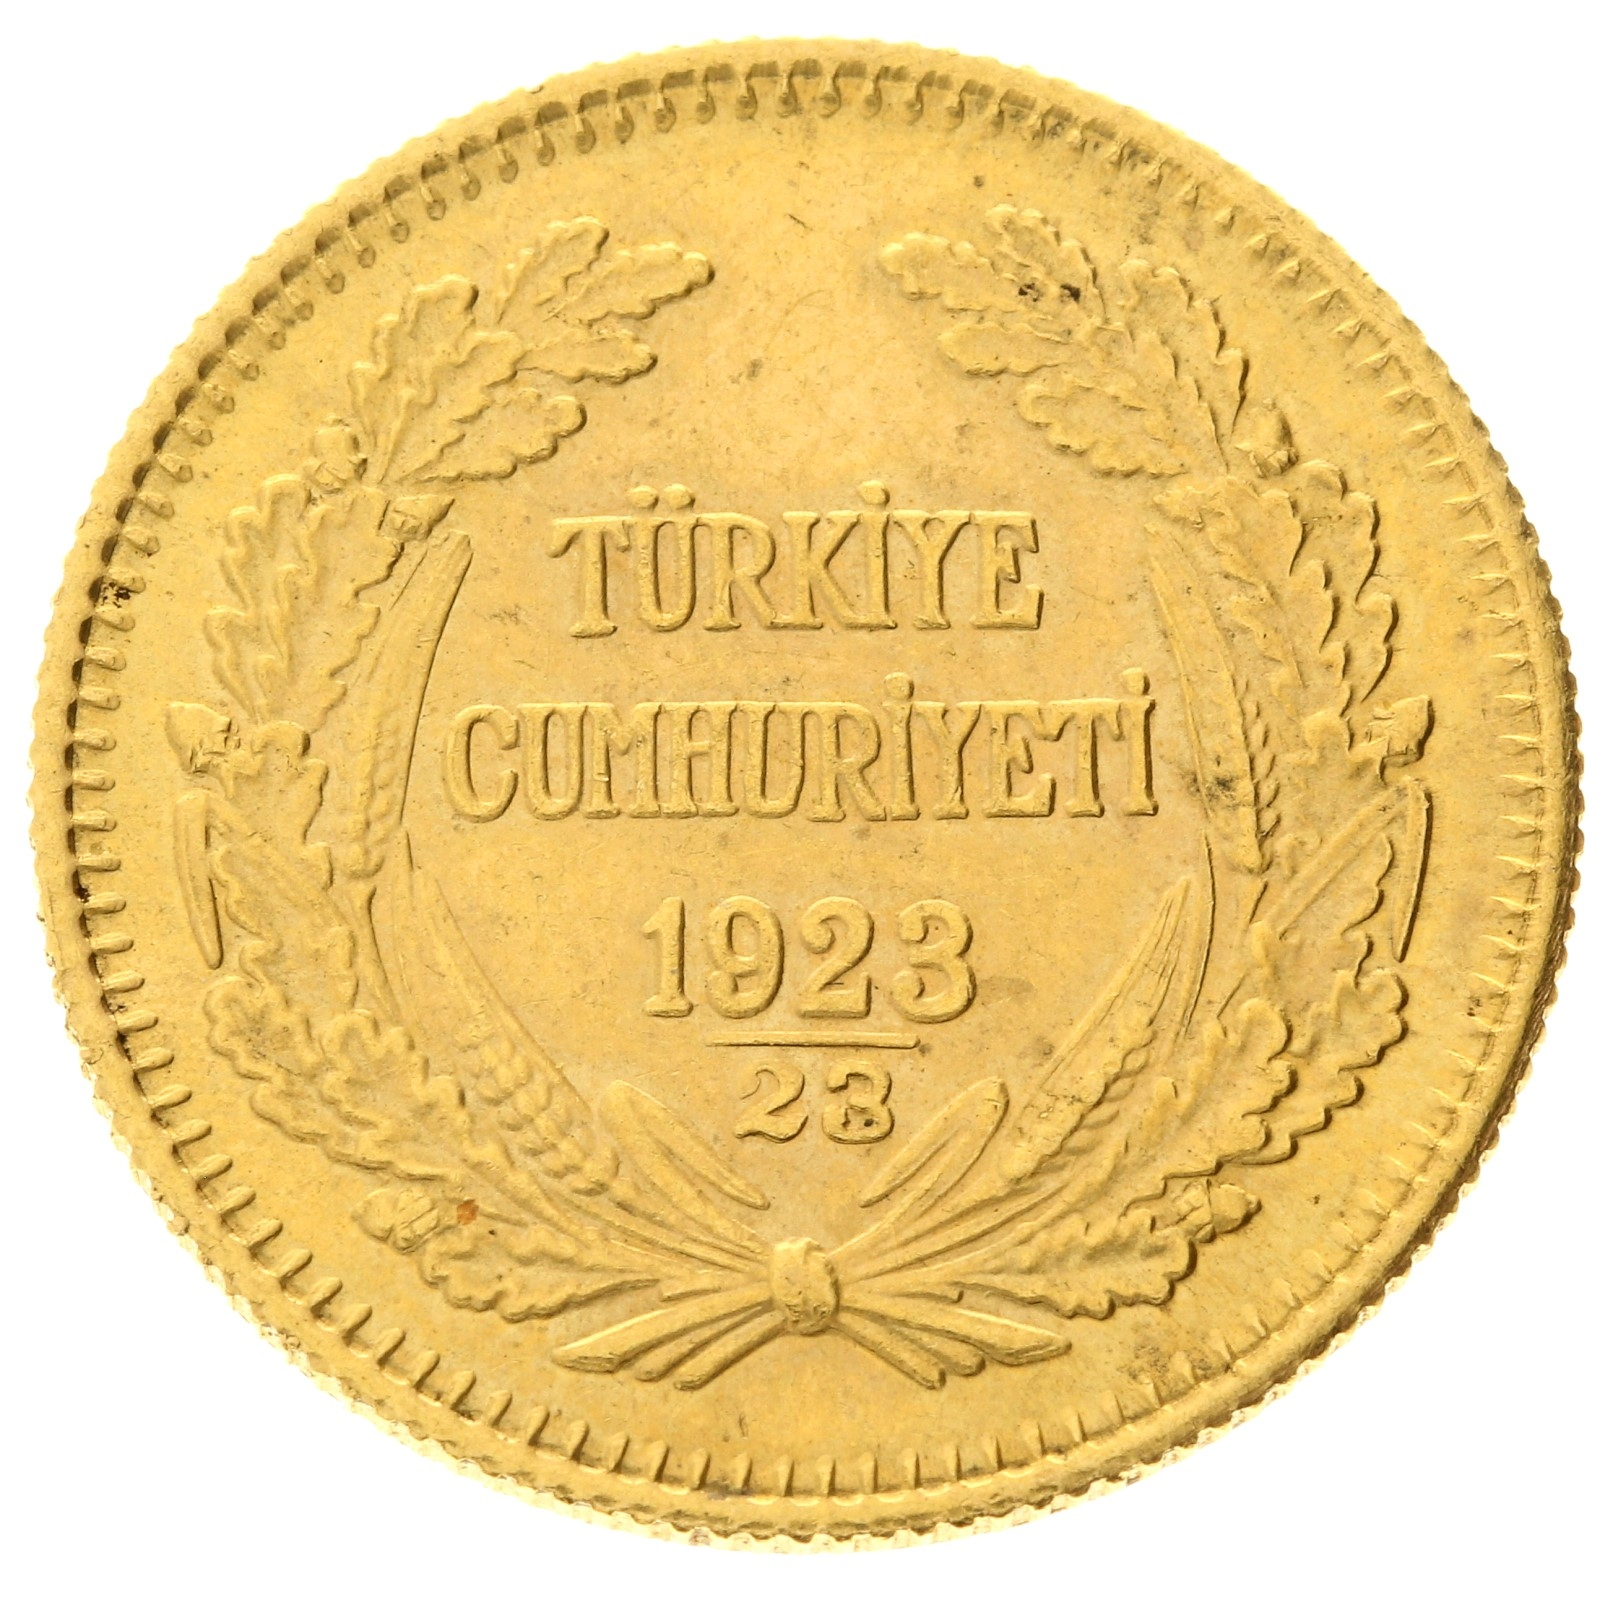 Turkey - 100 kurush 1923/23 (1946) - Ismet Inonu